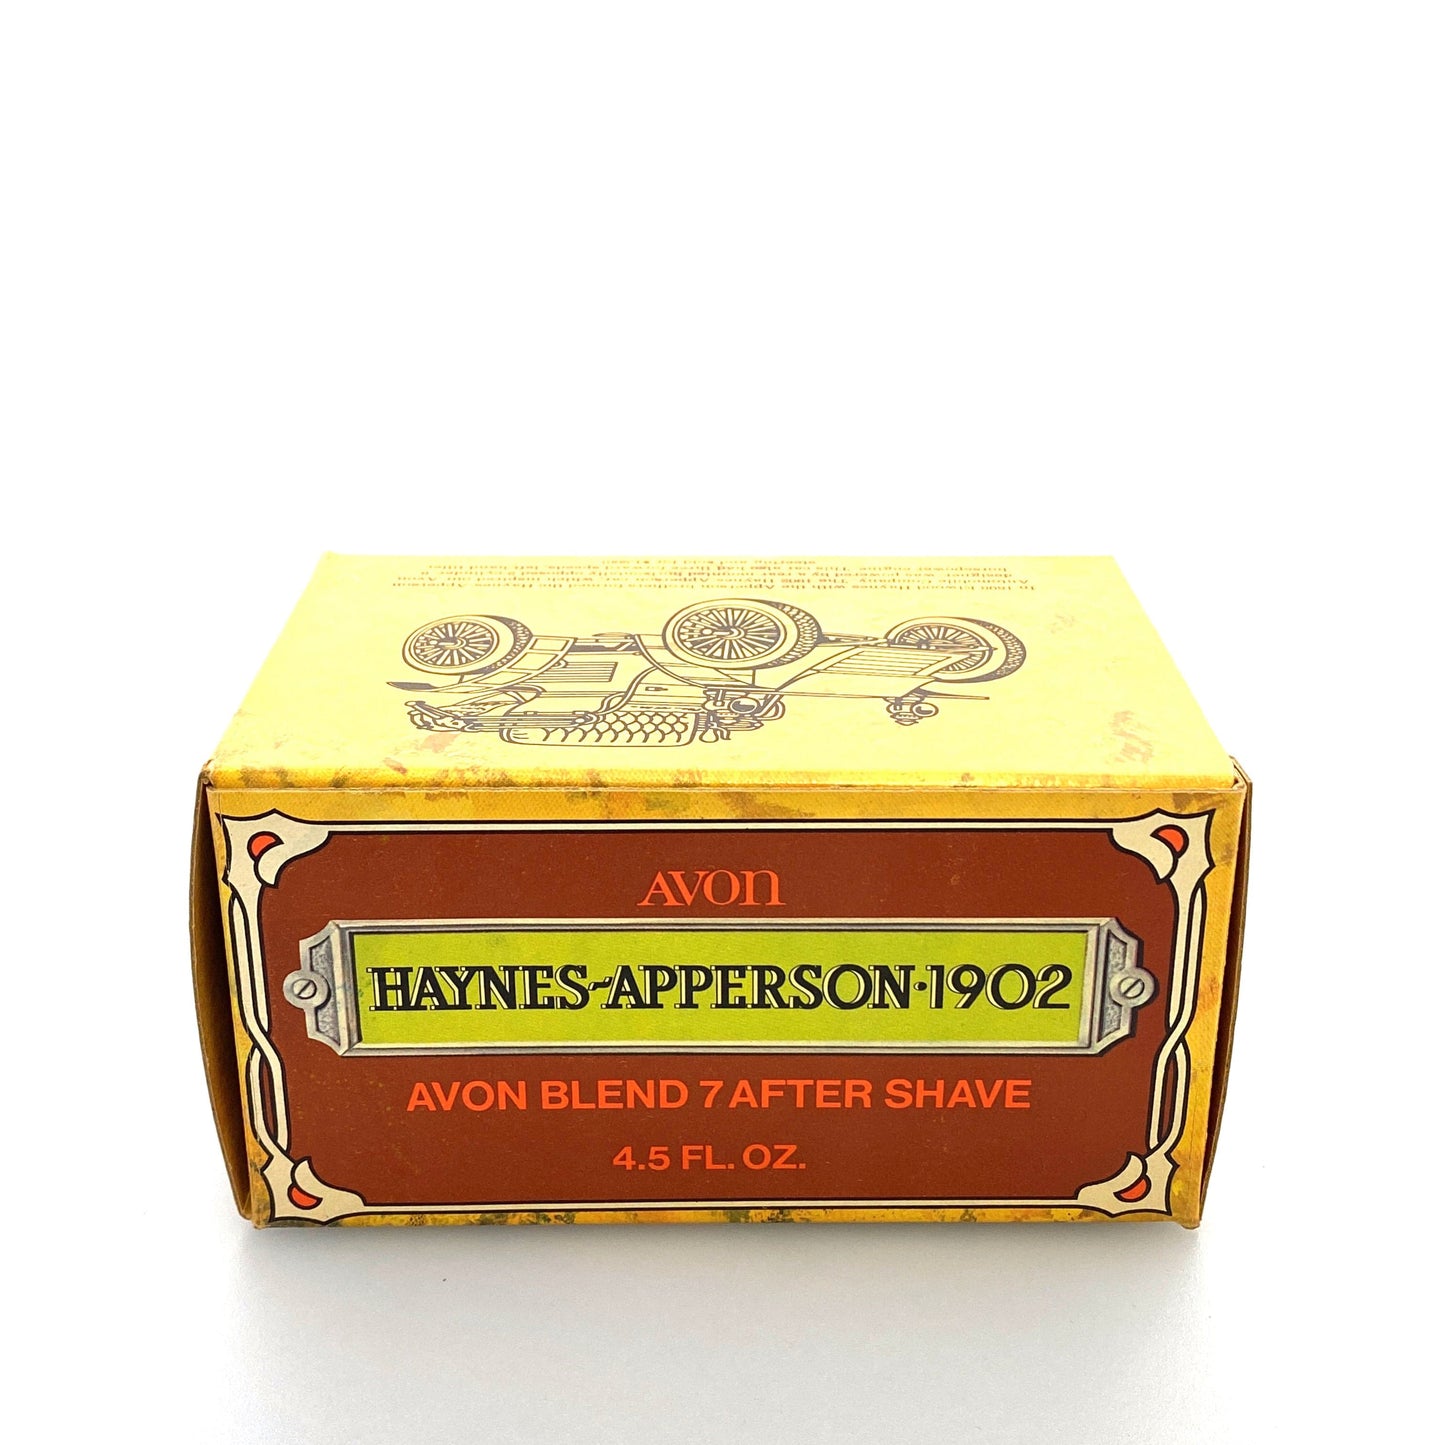 Vintage Avon Aftershave “Haynes-Apperson 1902” Avon Blend 7 4.5fl Oz Bottle Full